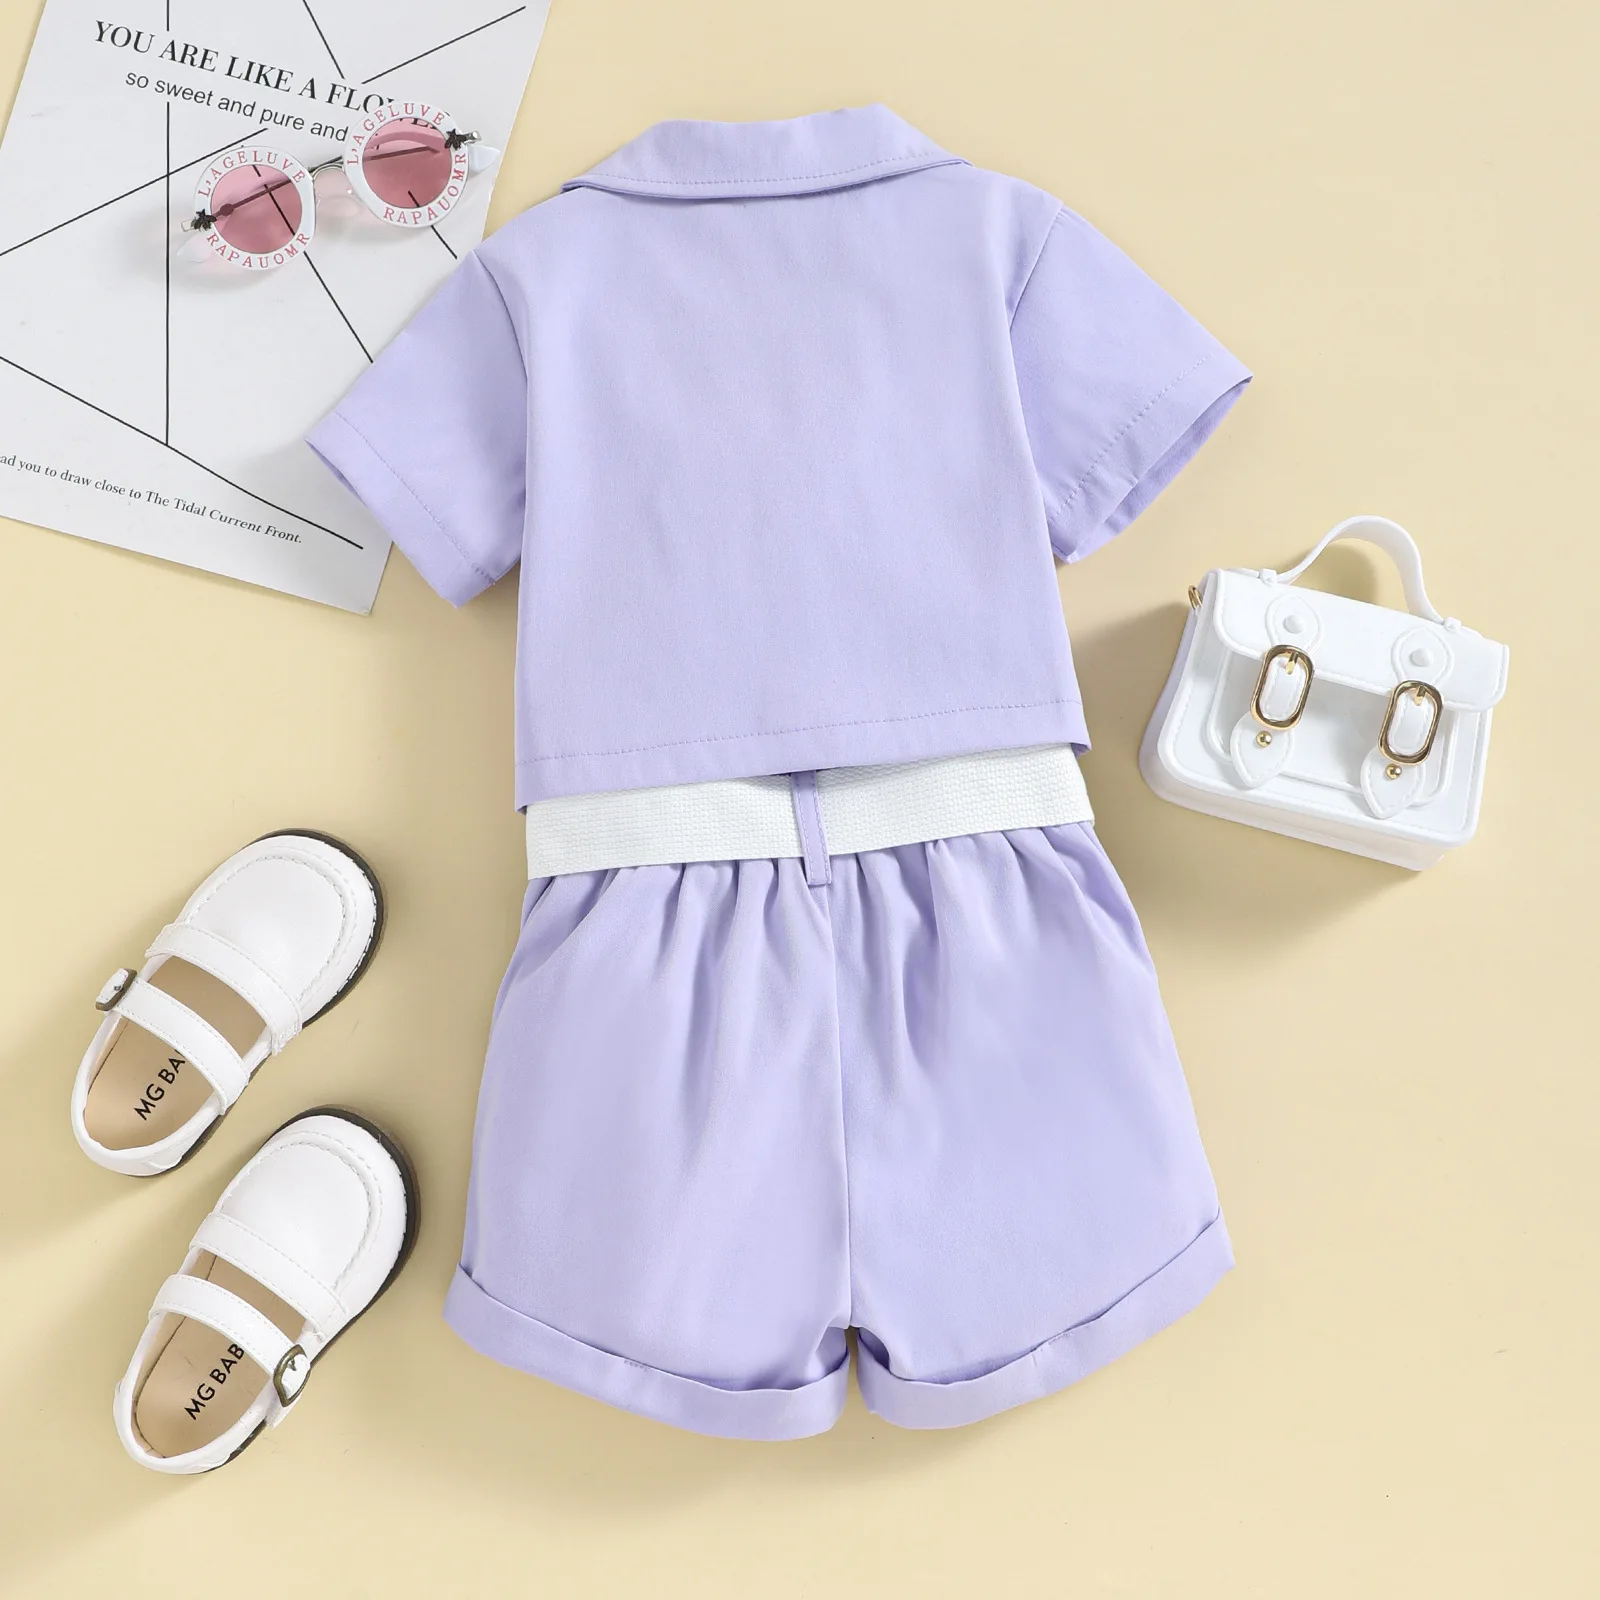 Conyson Wholesale Hot Fashion Summer Kids Clothes Short Sleeve Suit Shorts Bag 2pcs Little Girls Clothes Set for Kids Outfit